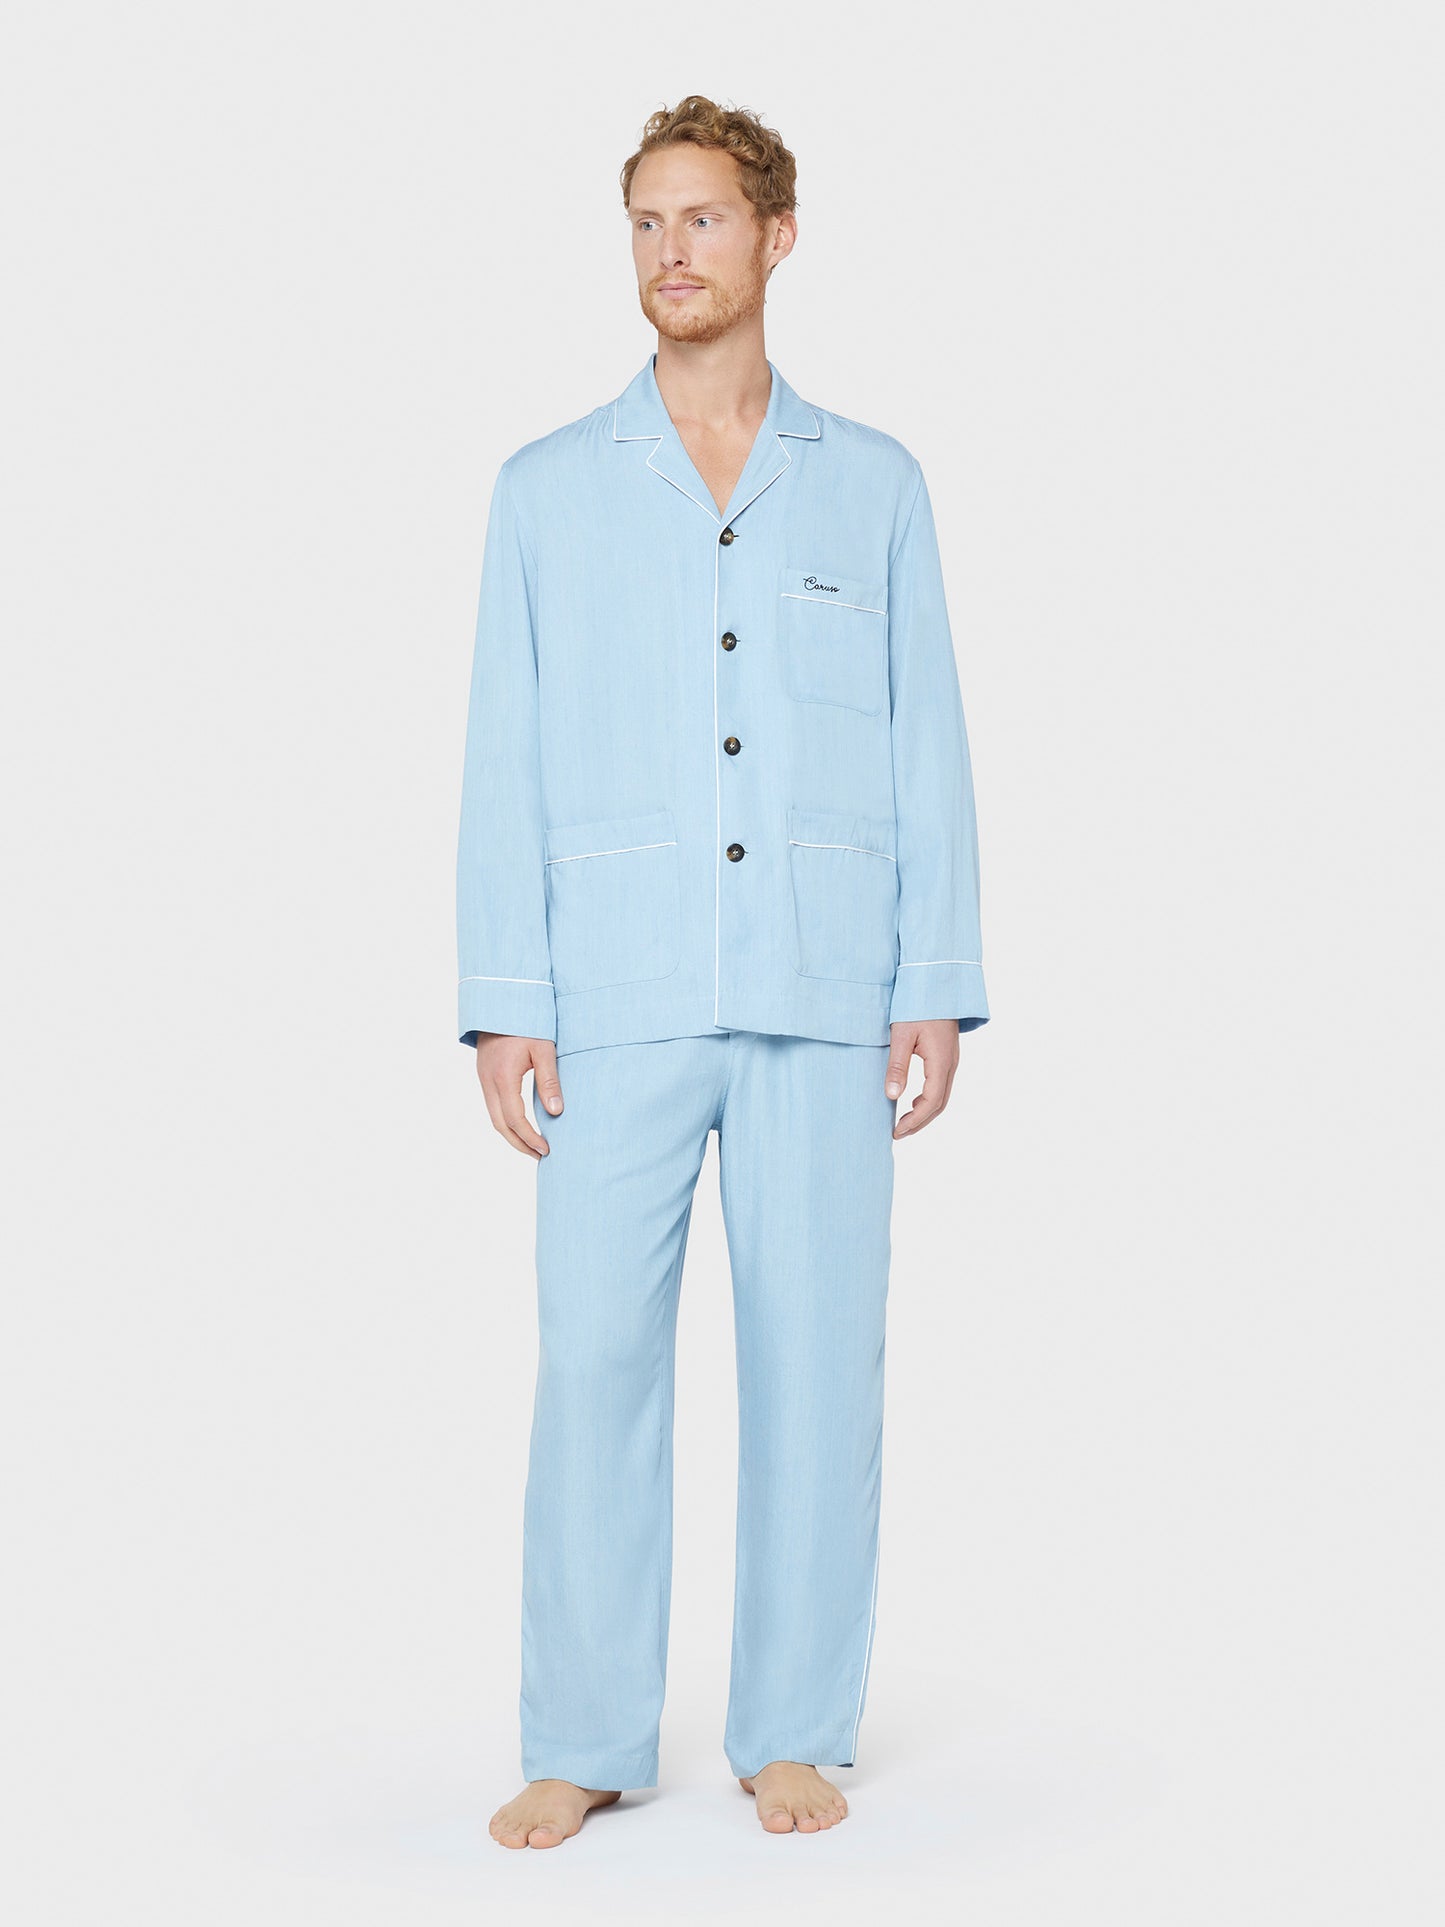 Caruso Menswear Abbigliamento Uomo Home suit sleepwear pigiama in tencel azzurro jeans total look